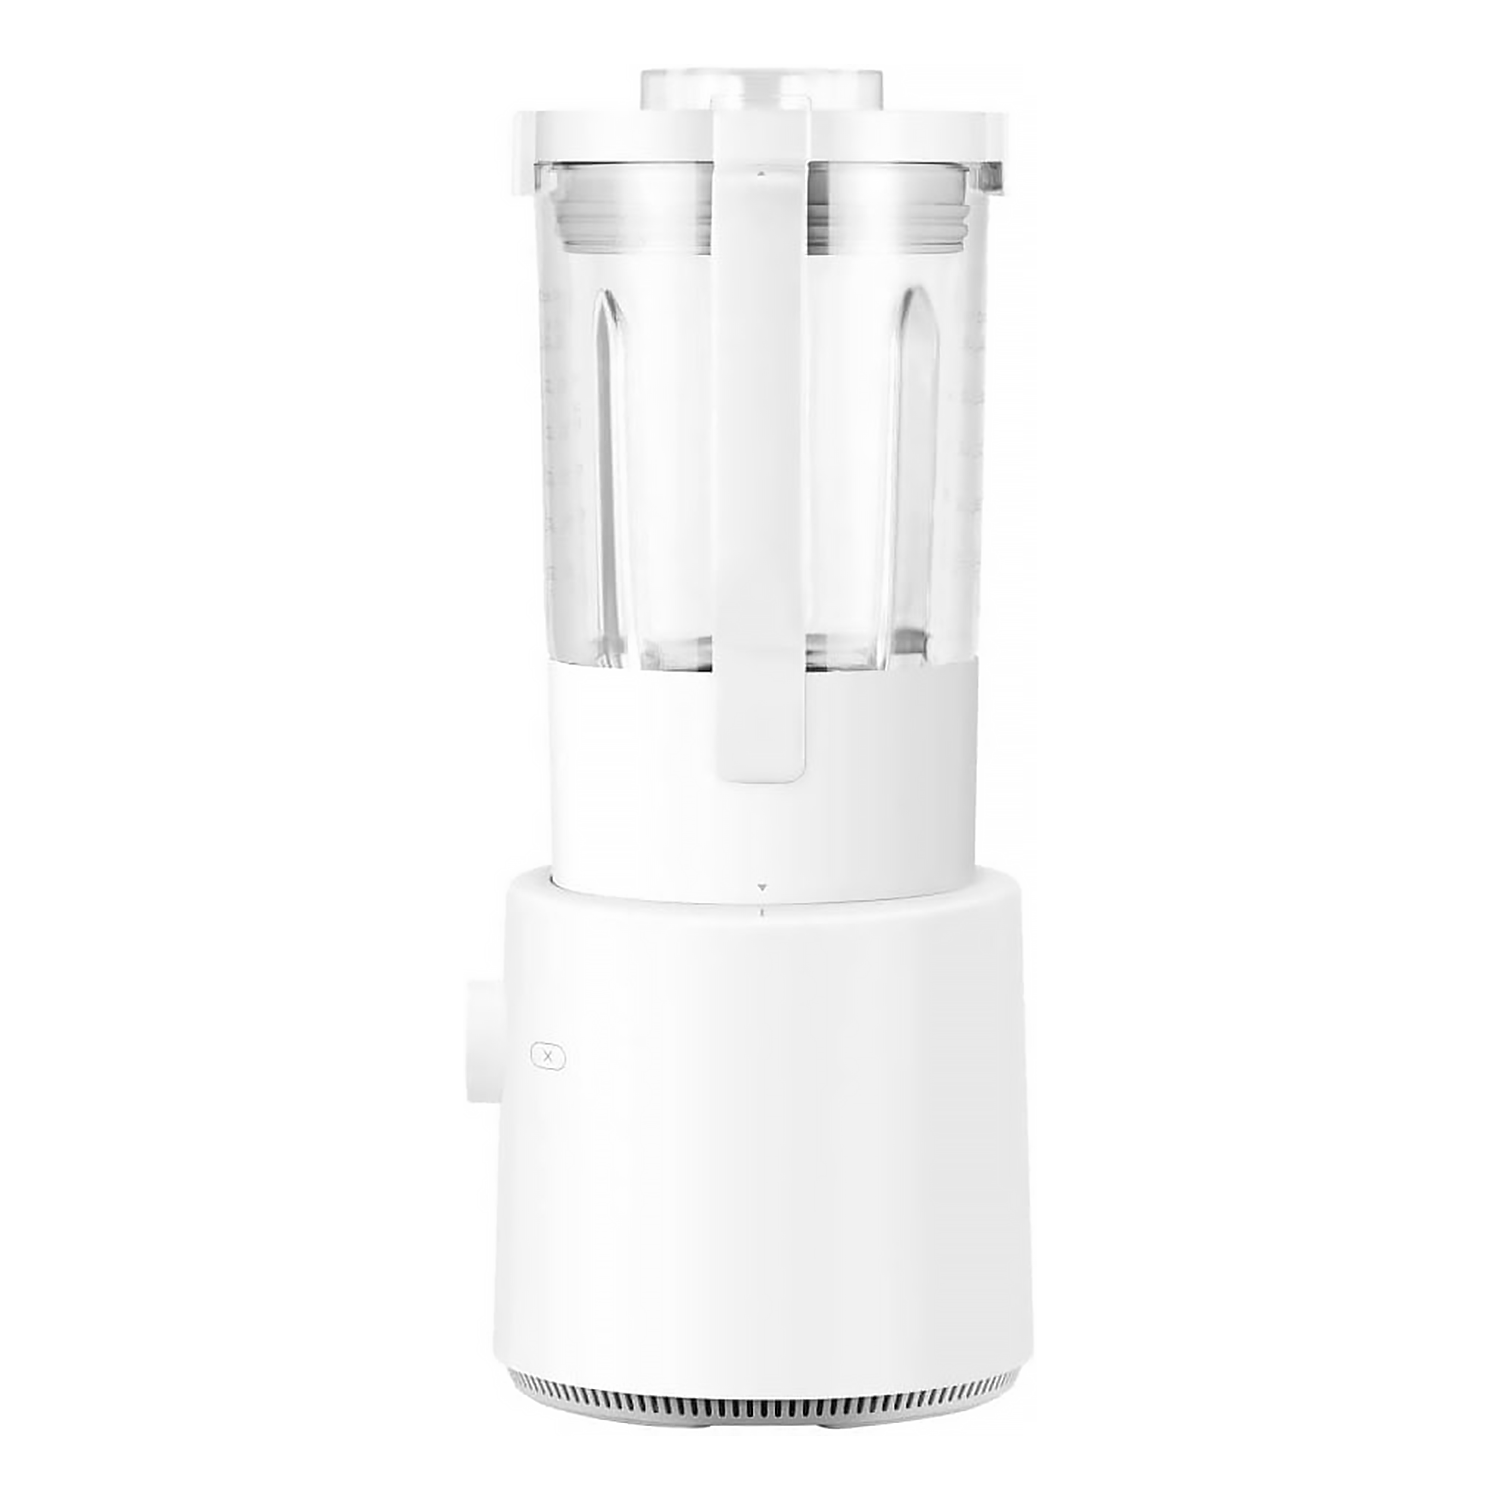 Liquidificador Xiaomi Smart Blender - Branco (BHR5960EU)
